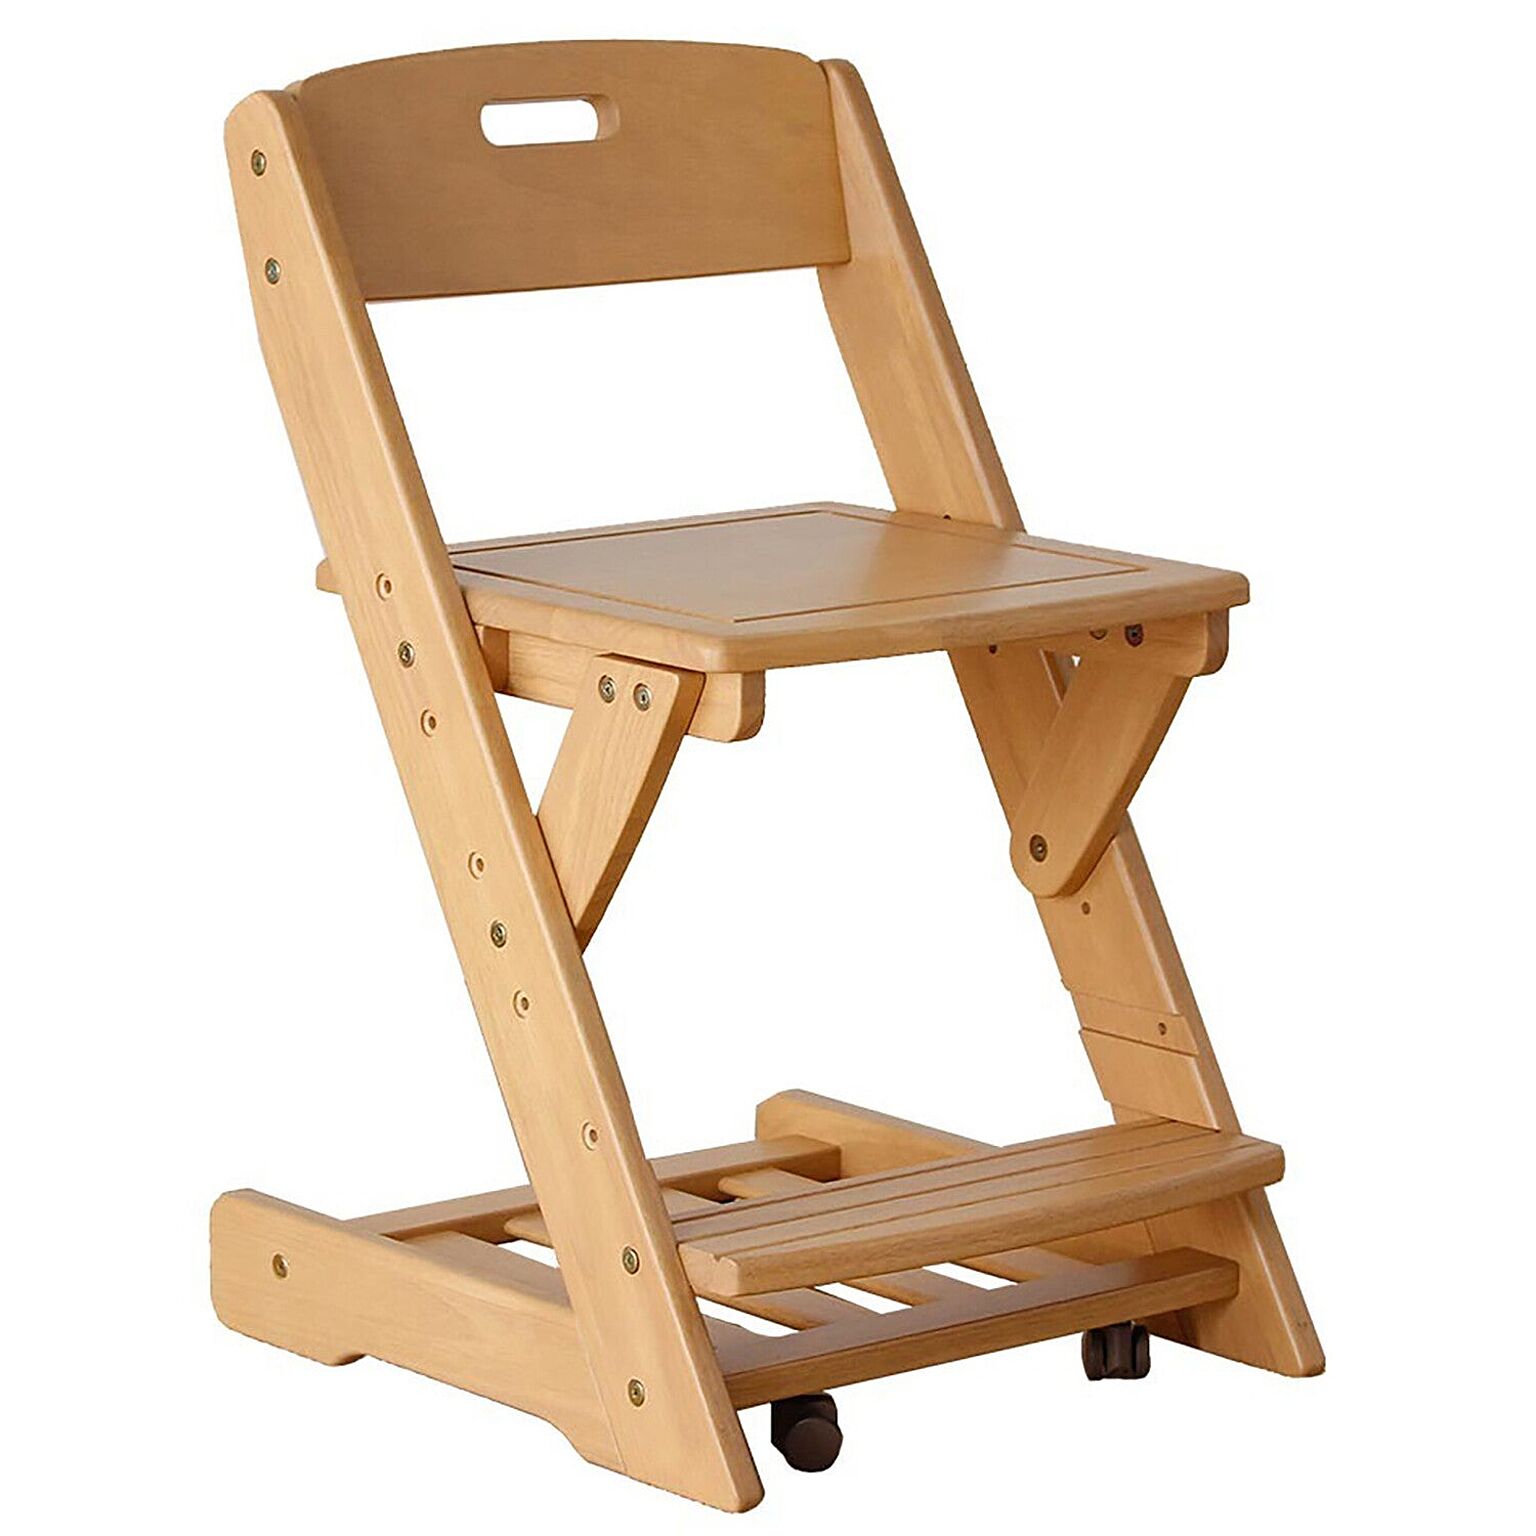 学習チェア 木製 学習イス 送料無料 木製無垢 EZ-2 おすすめ 木製チェア チェア—　チェア 椅子 学習イス 勉強イス ダイニングチェア 北欧 風 家具 昇降 キャスター付き キャスター